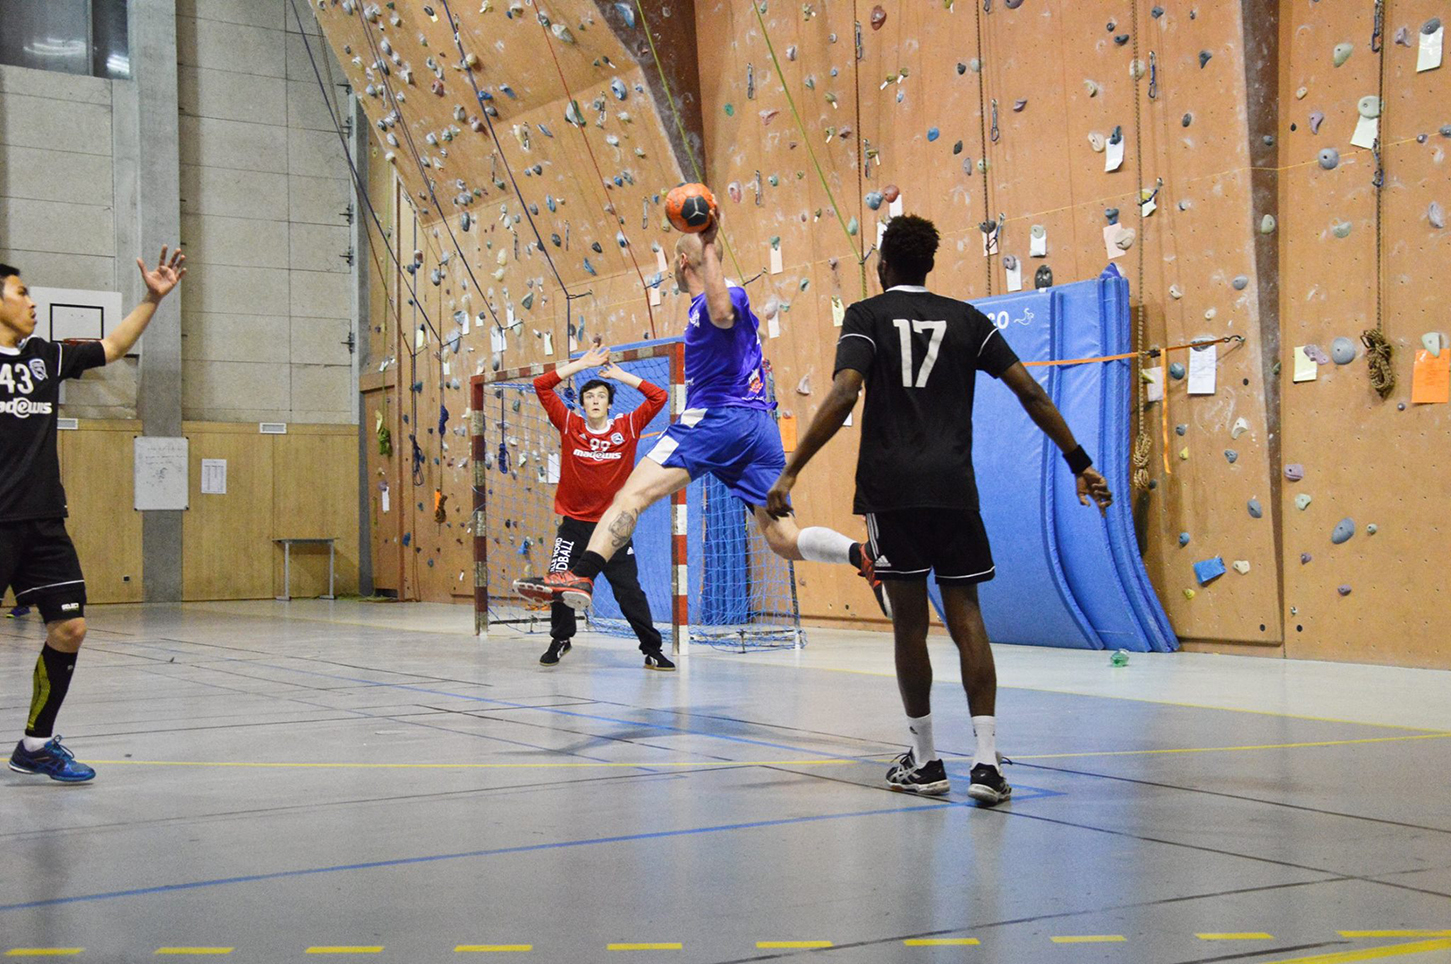 L’EPM Handball mise sur la pédagogie